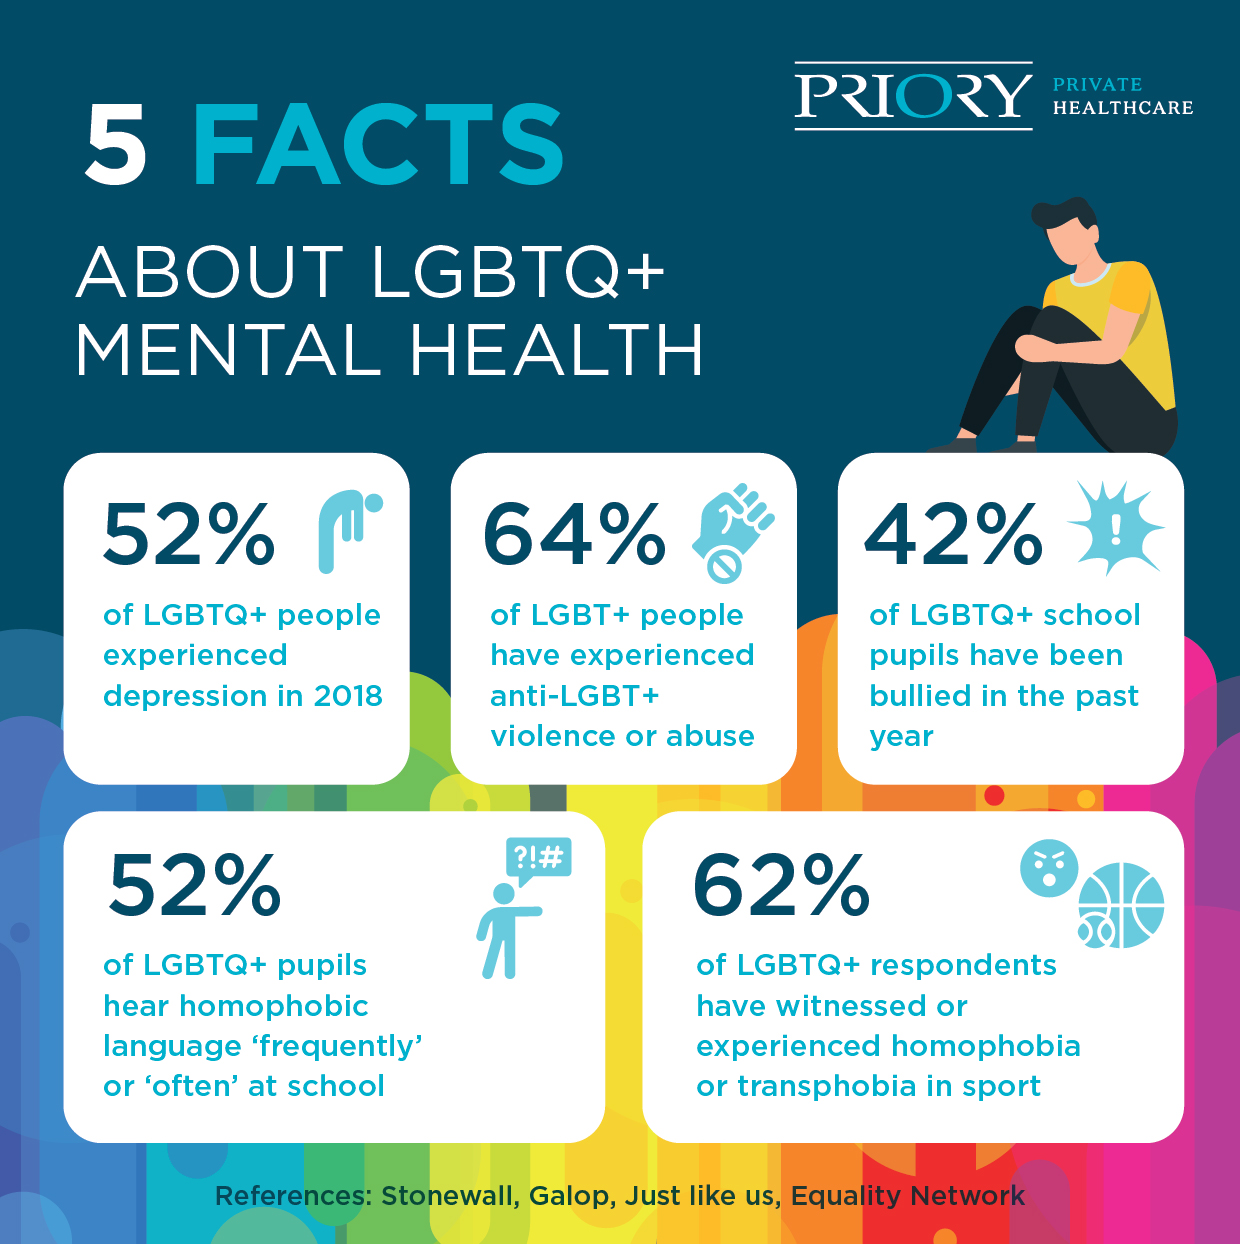 LGBTQ+ mental health facts